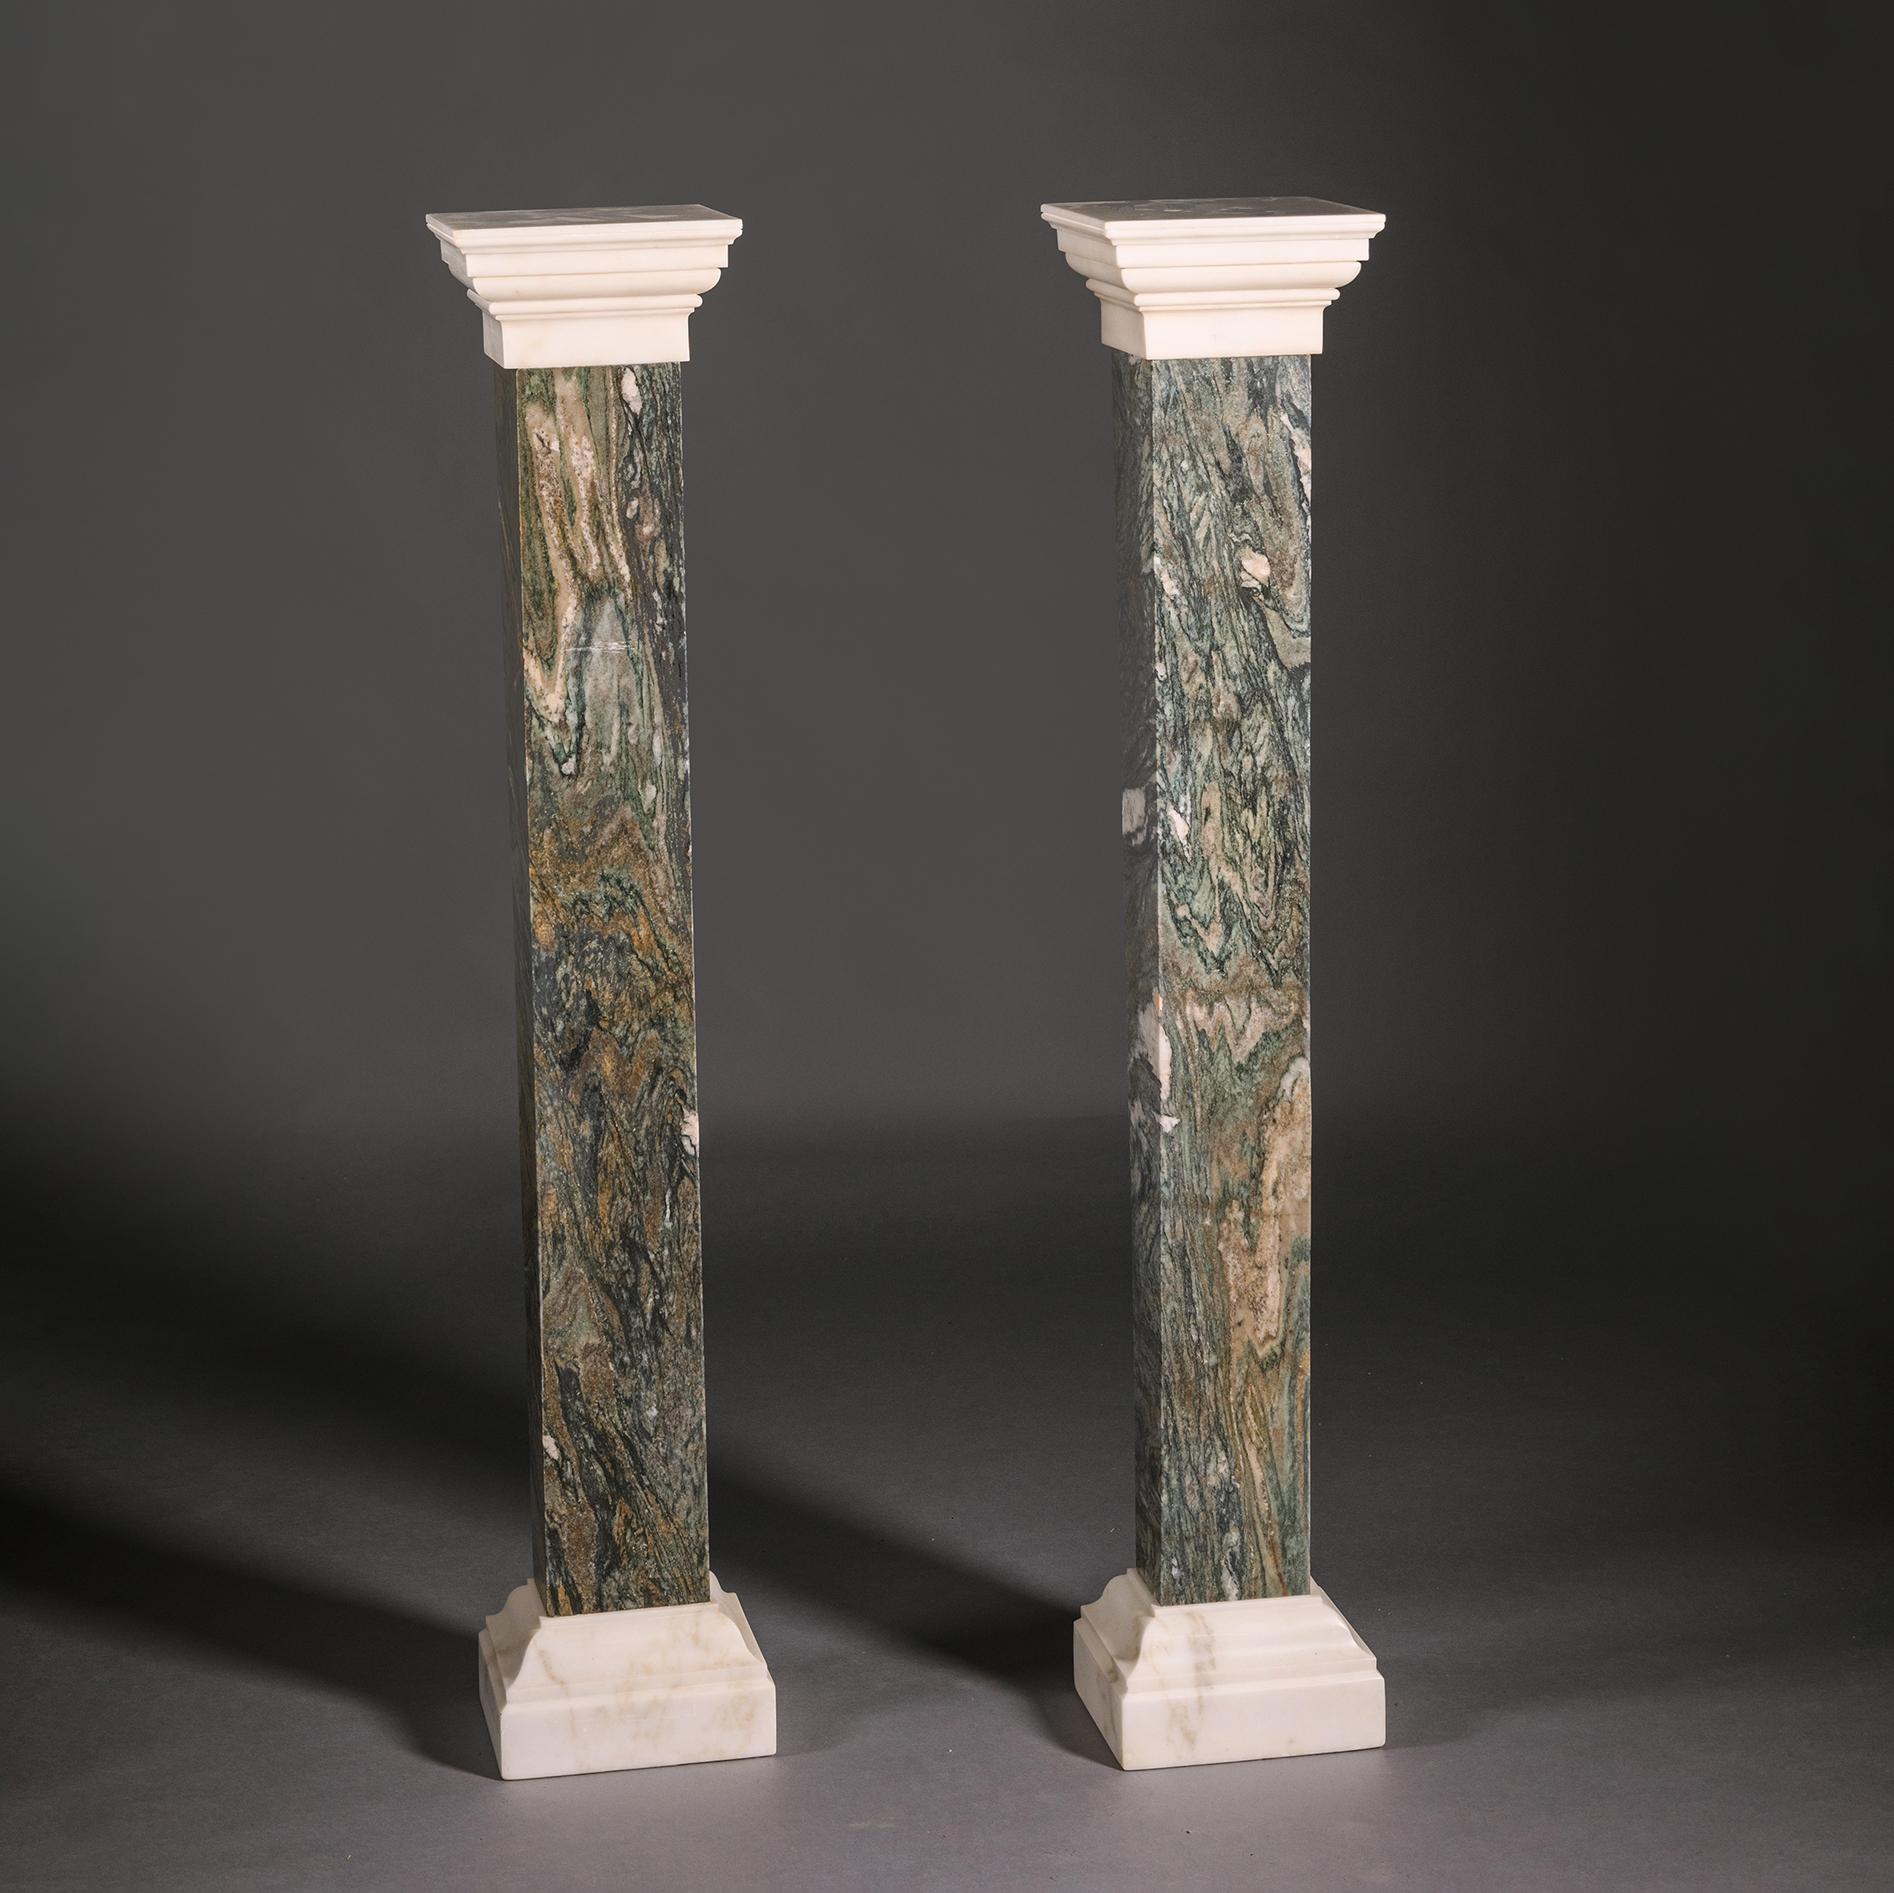 Ein Paar Sockel aus grünem Breccia- und Carrara-Marmor

Beide haben einen quadratischen Aufsatz mit gestuftem Giebel aus feinem weißen Carrara-Marmor. Die Säule aus ungewöhnlichem grünem Breccia-Marmor steht auf einem rechteckigen Fuß aus